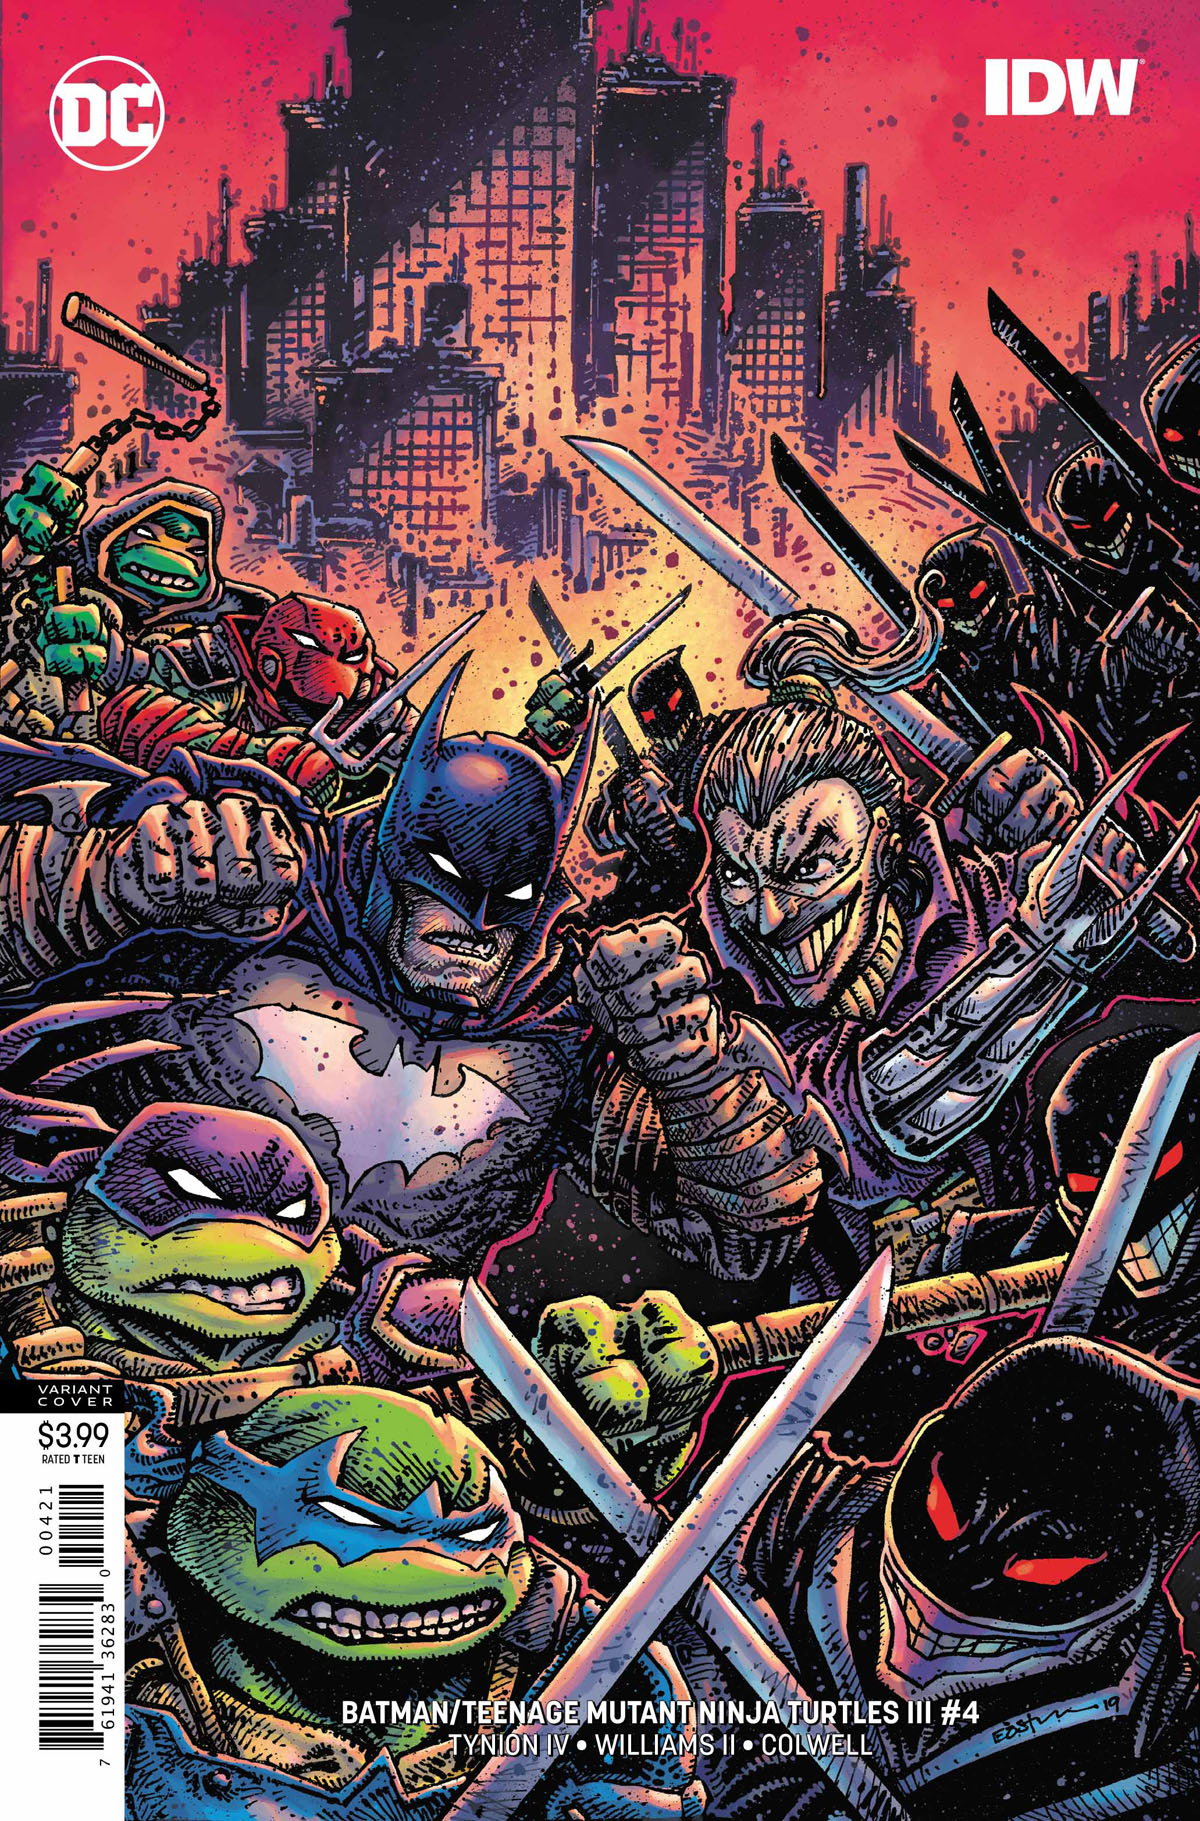 Batman/Teenage Mutant Ninja Turtles III #4 variant cover